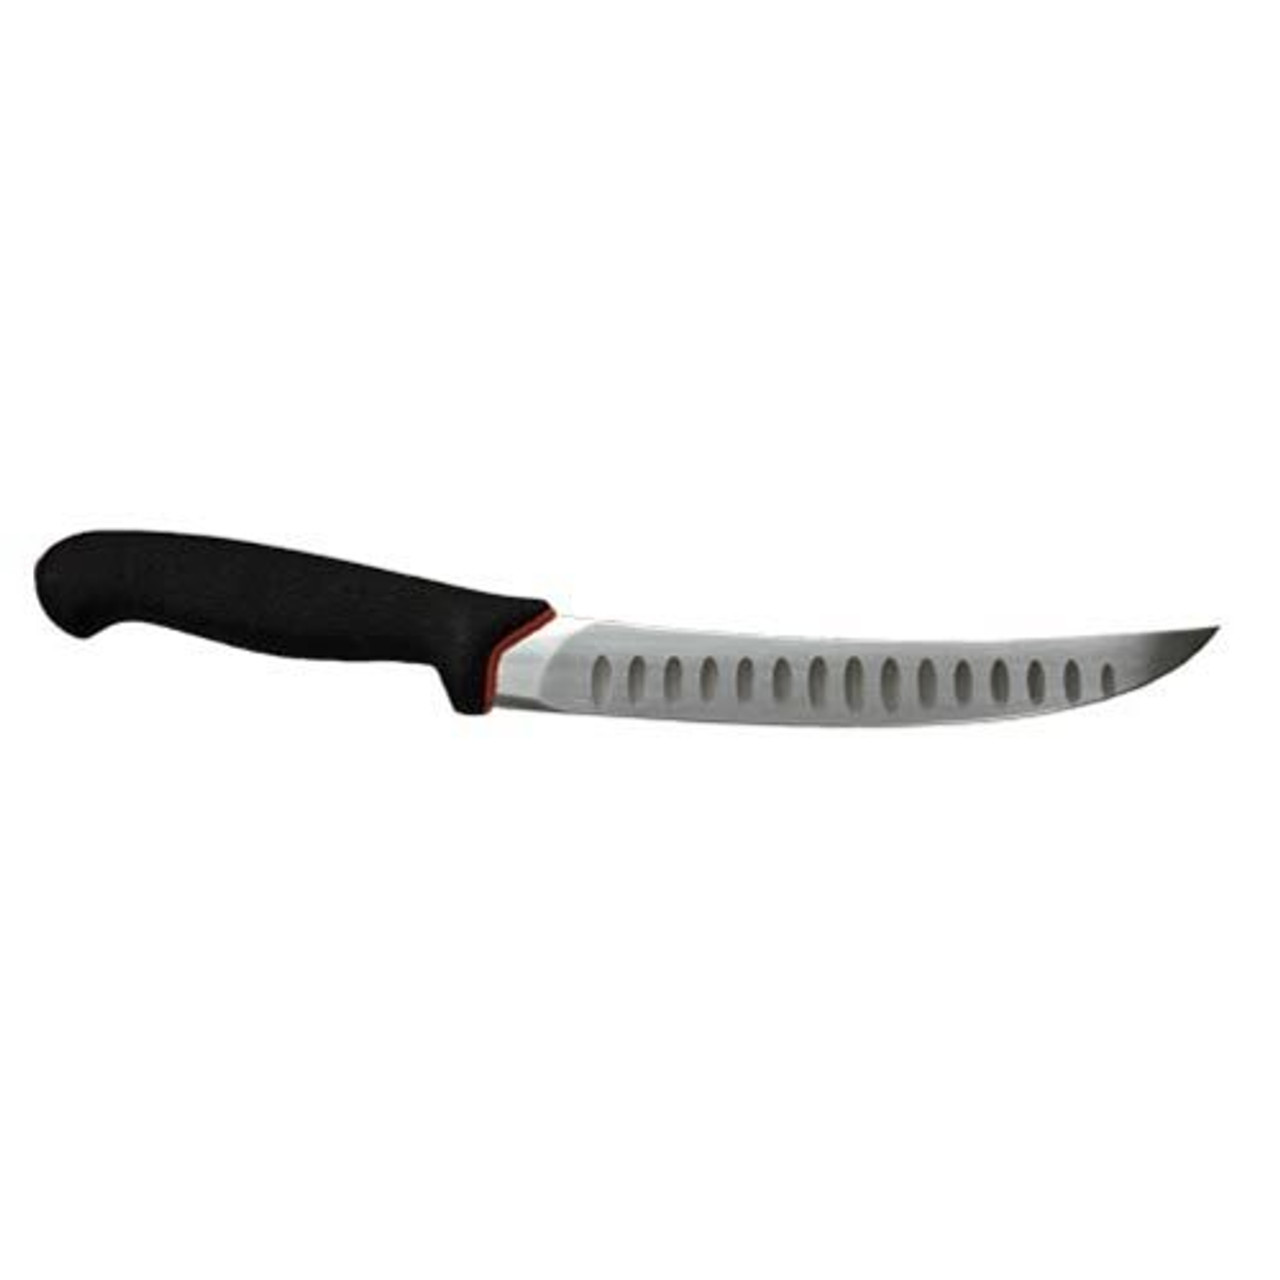 Giesser Breaking Knife (8) - Walton's